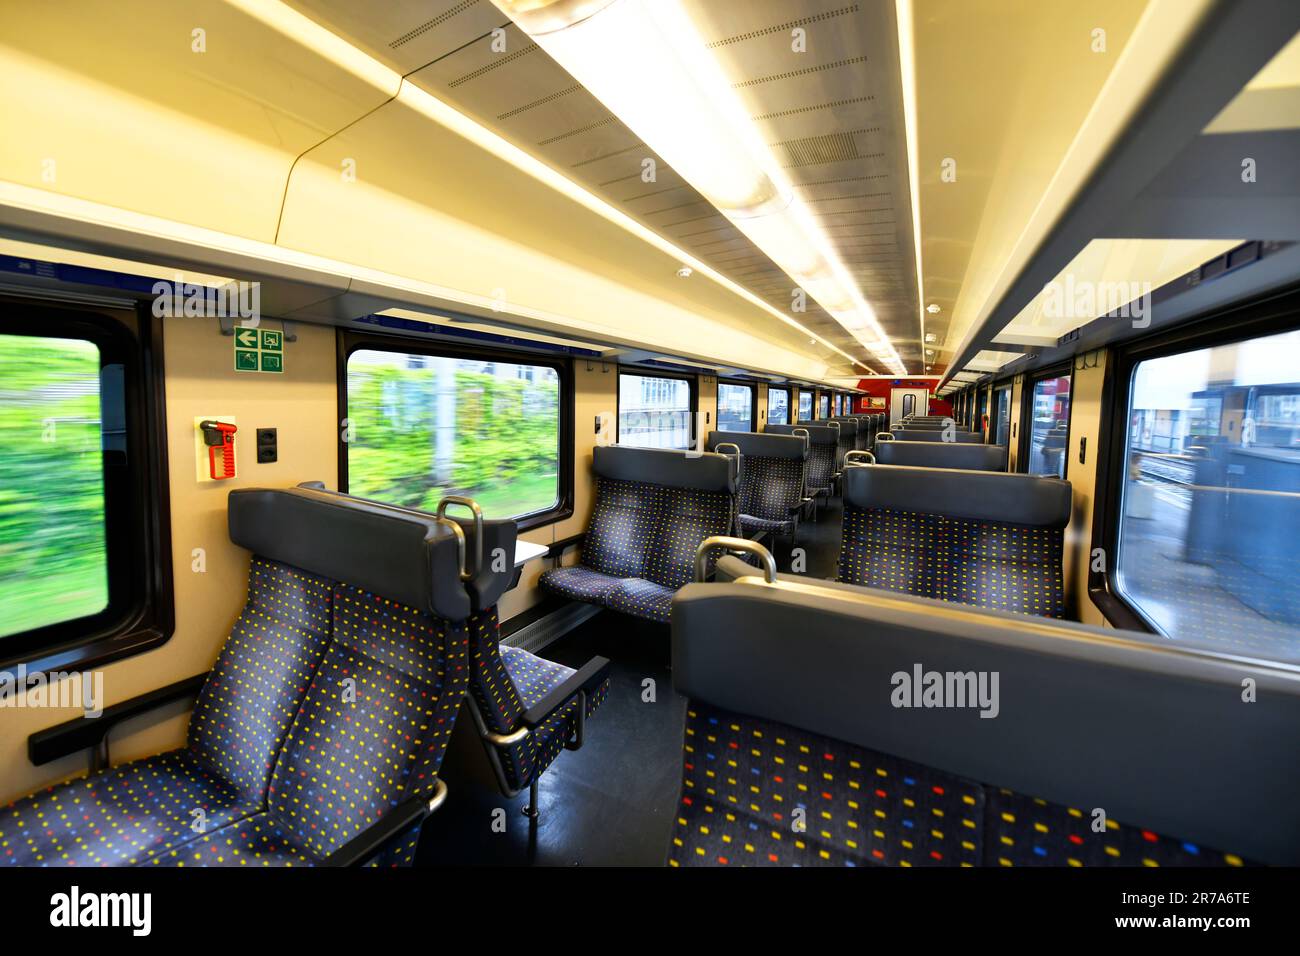 Train suisse siège de fenêtre de deuxième classe cabine public vide Transit Suisse Passenger Railway Network Banque D'Images